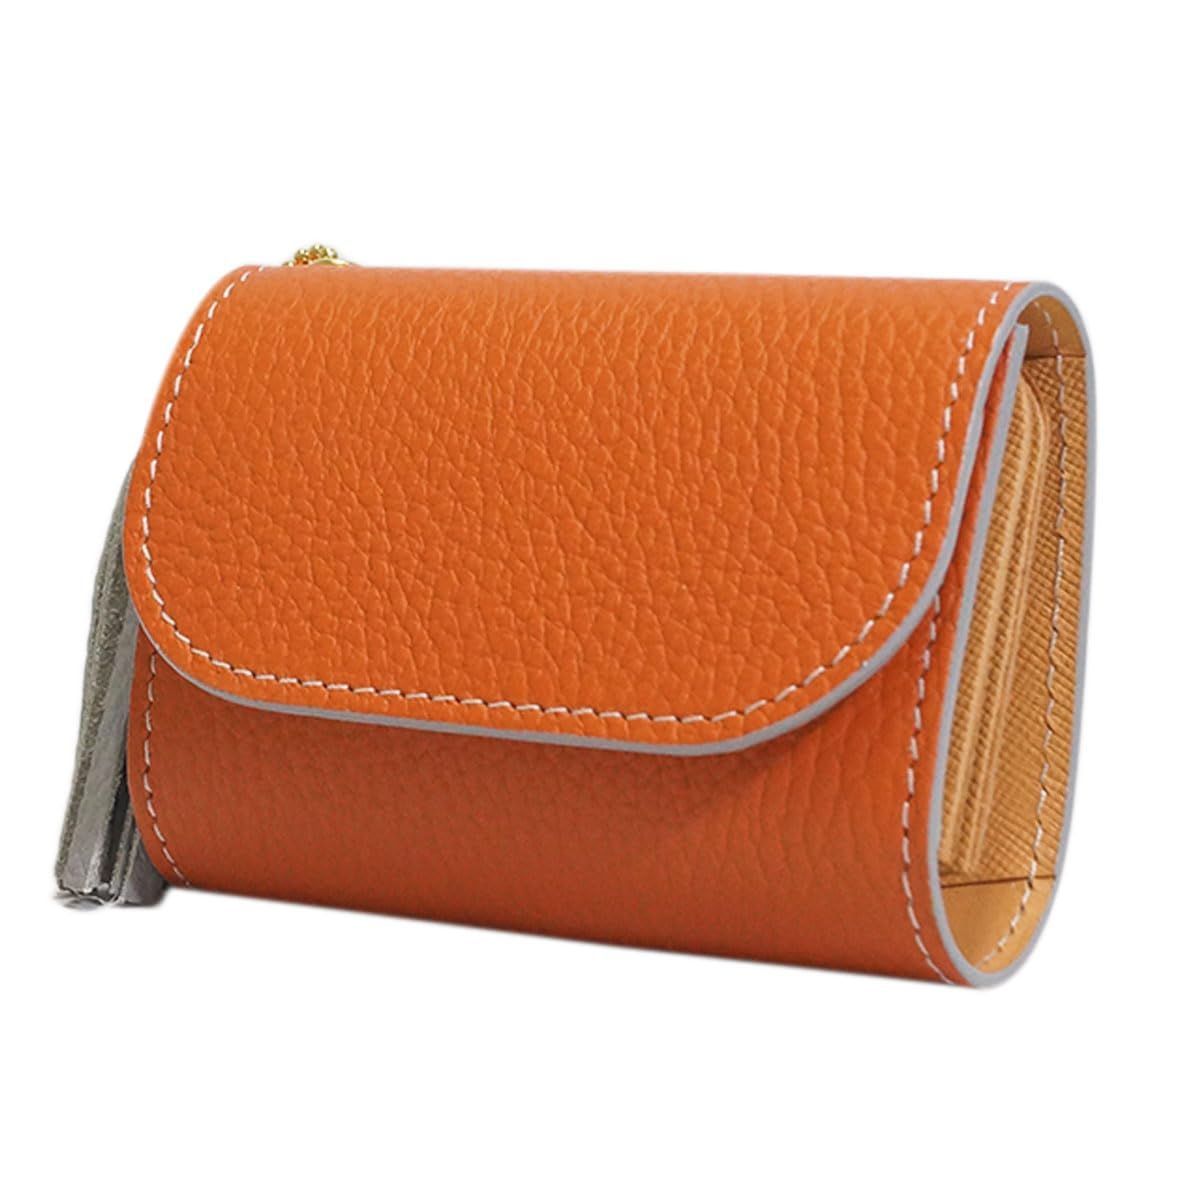 [COTOCUL] コトカル ミニ財布 本革 イタリアンレザー お札が折れない 二つ折り 小さい財布 レディース メンズ (オレンジ)